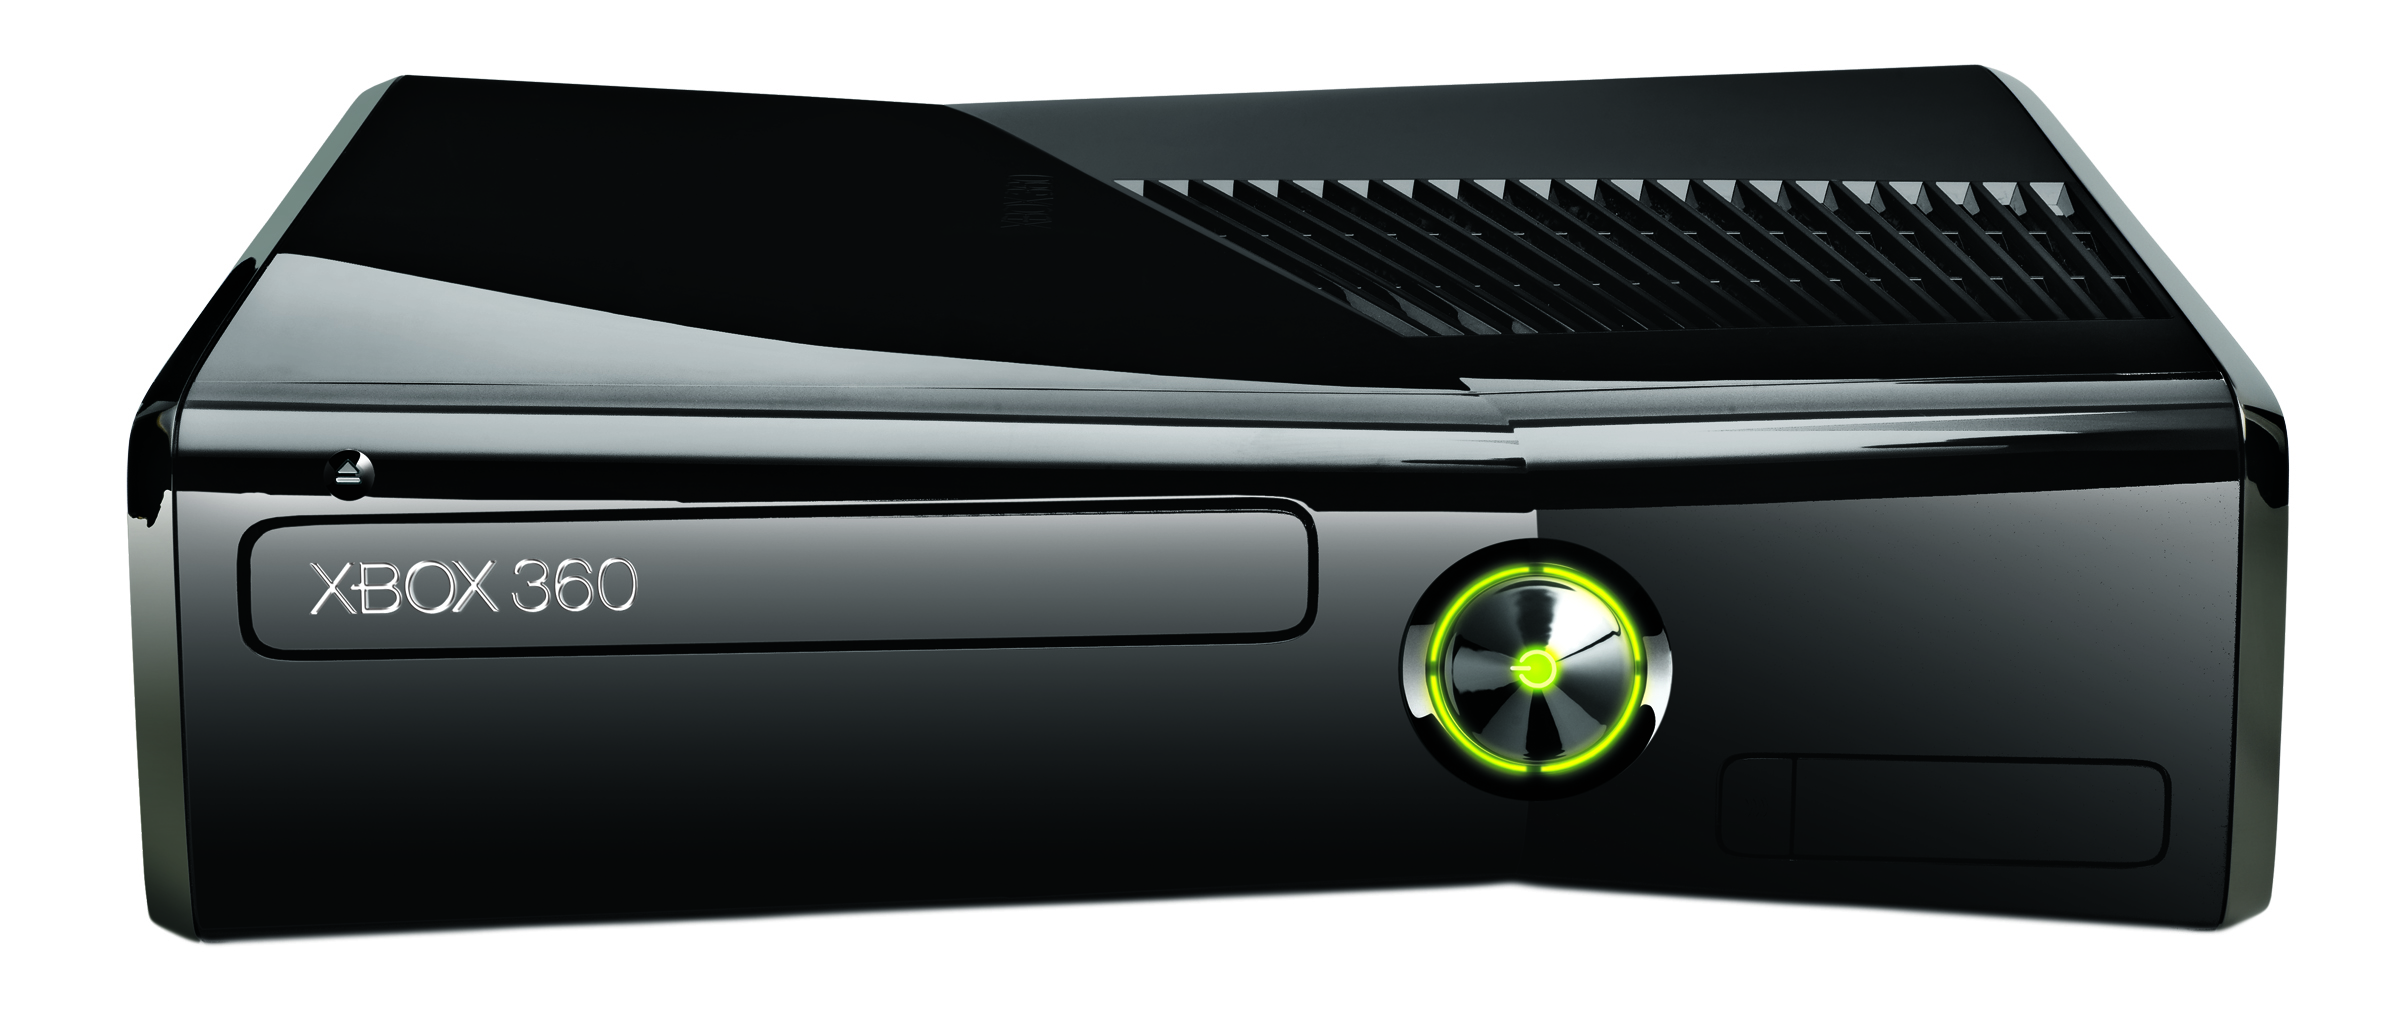 Wereldvenster Handelsmerk Aanvankelijk Redesigned and thinner Xbox 360 is launched - Microsoft News Centre UK